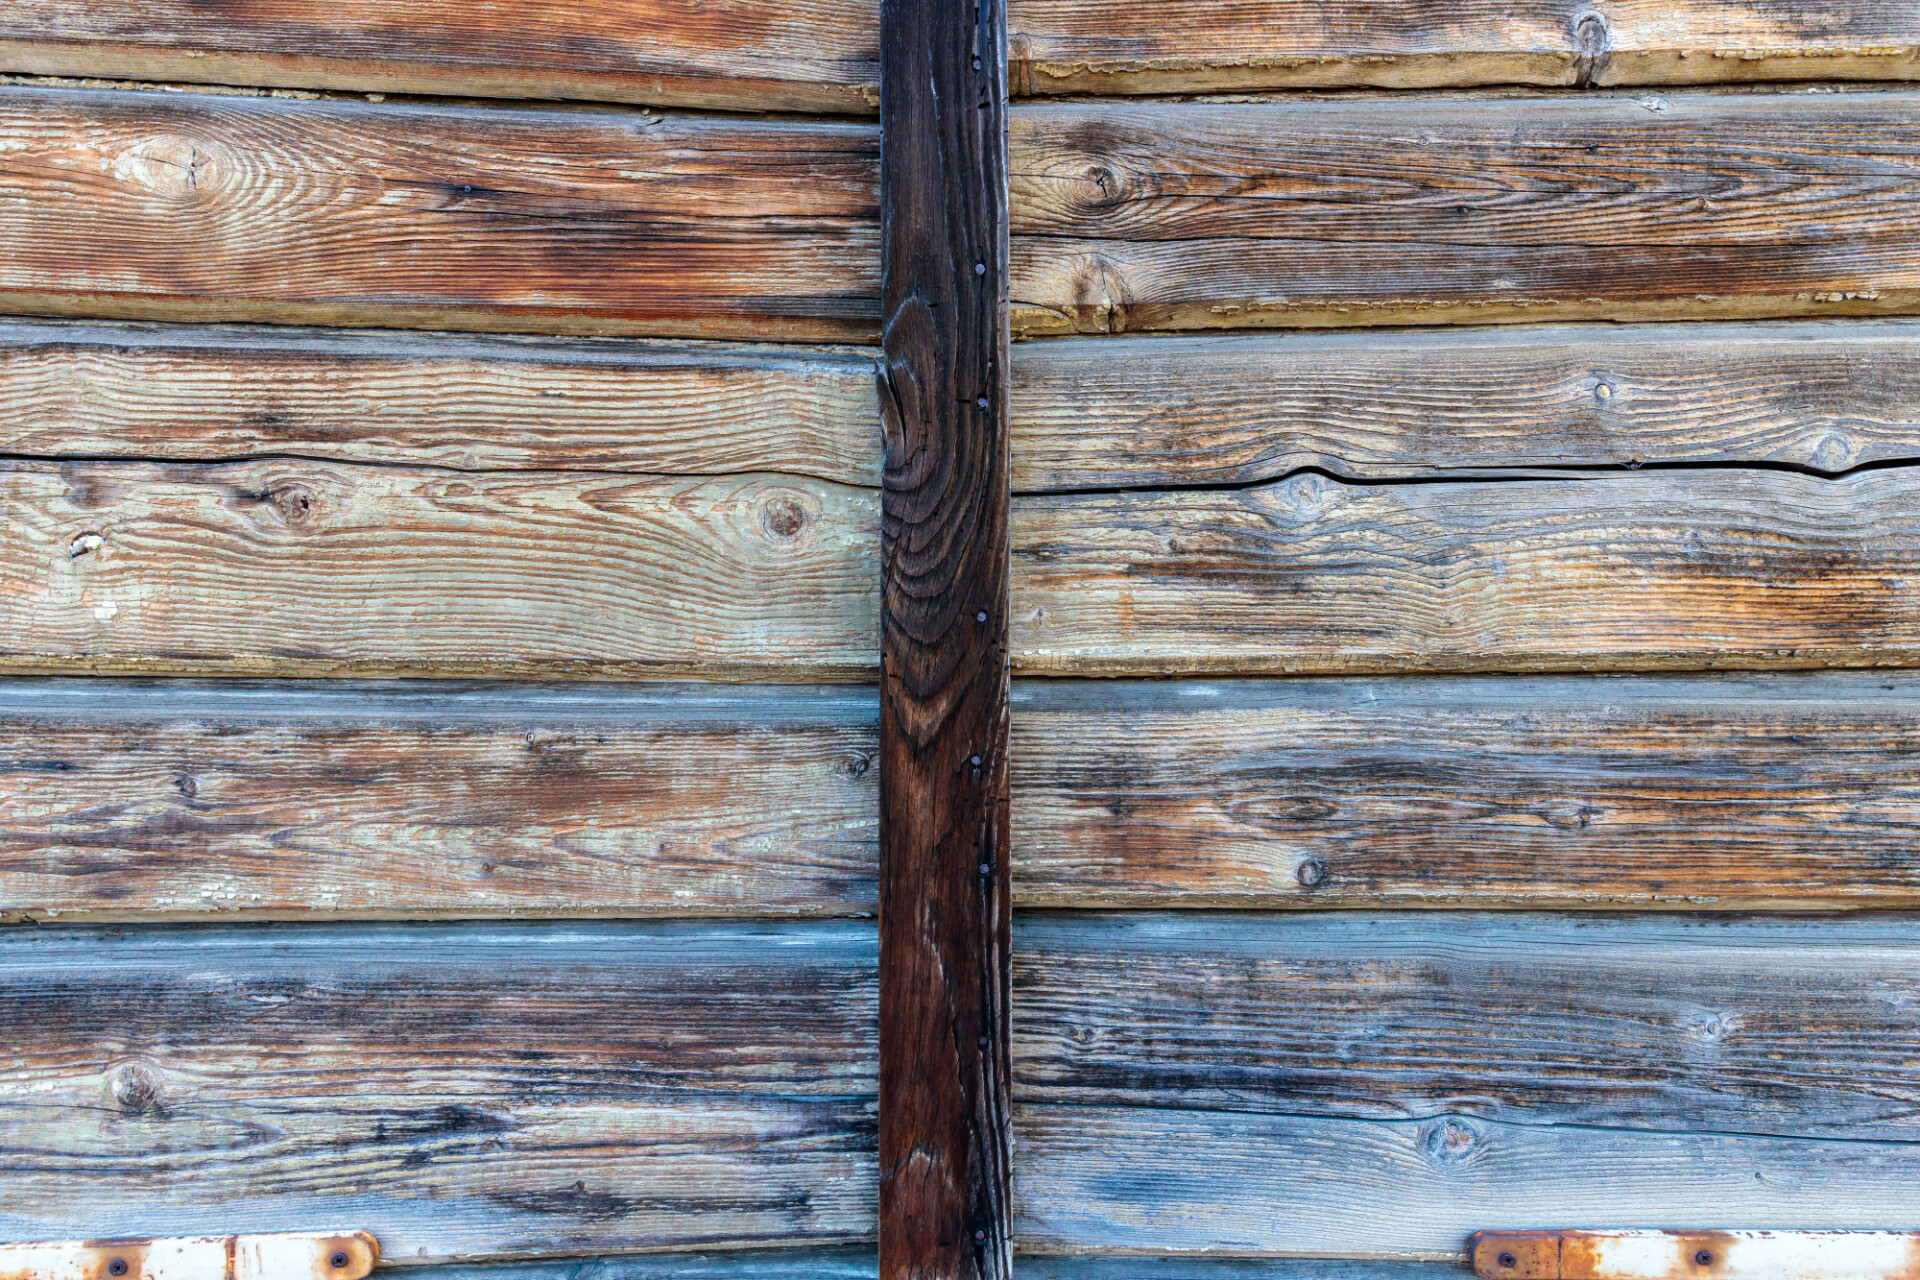 Worn Wood texture